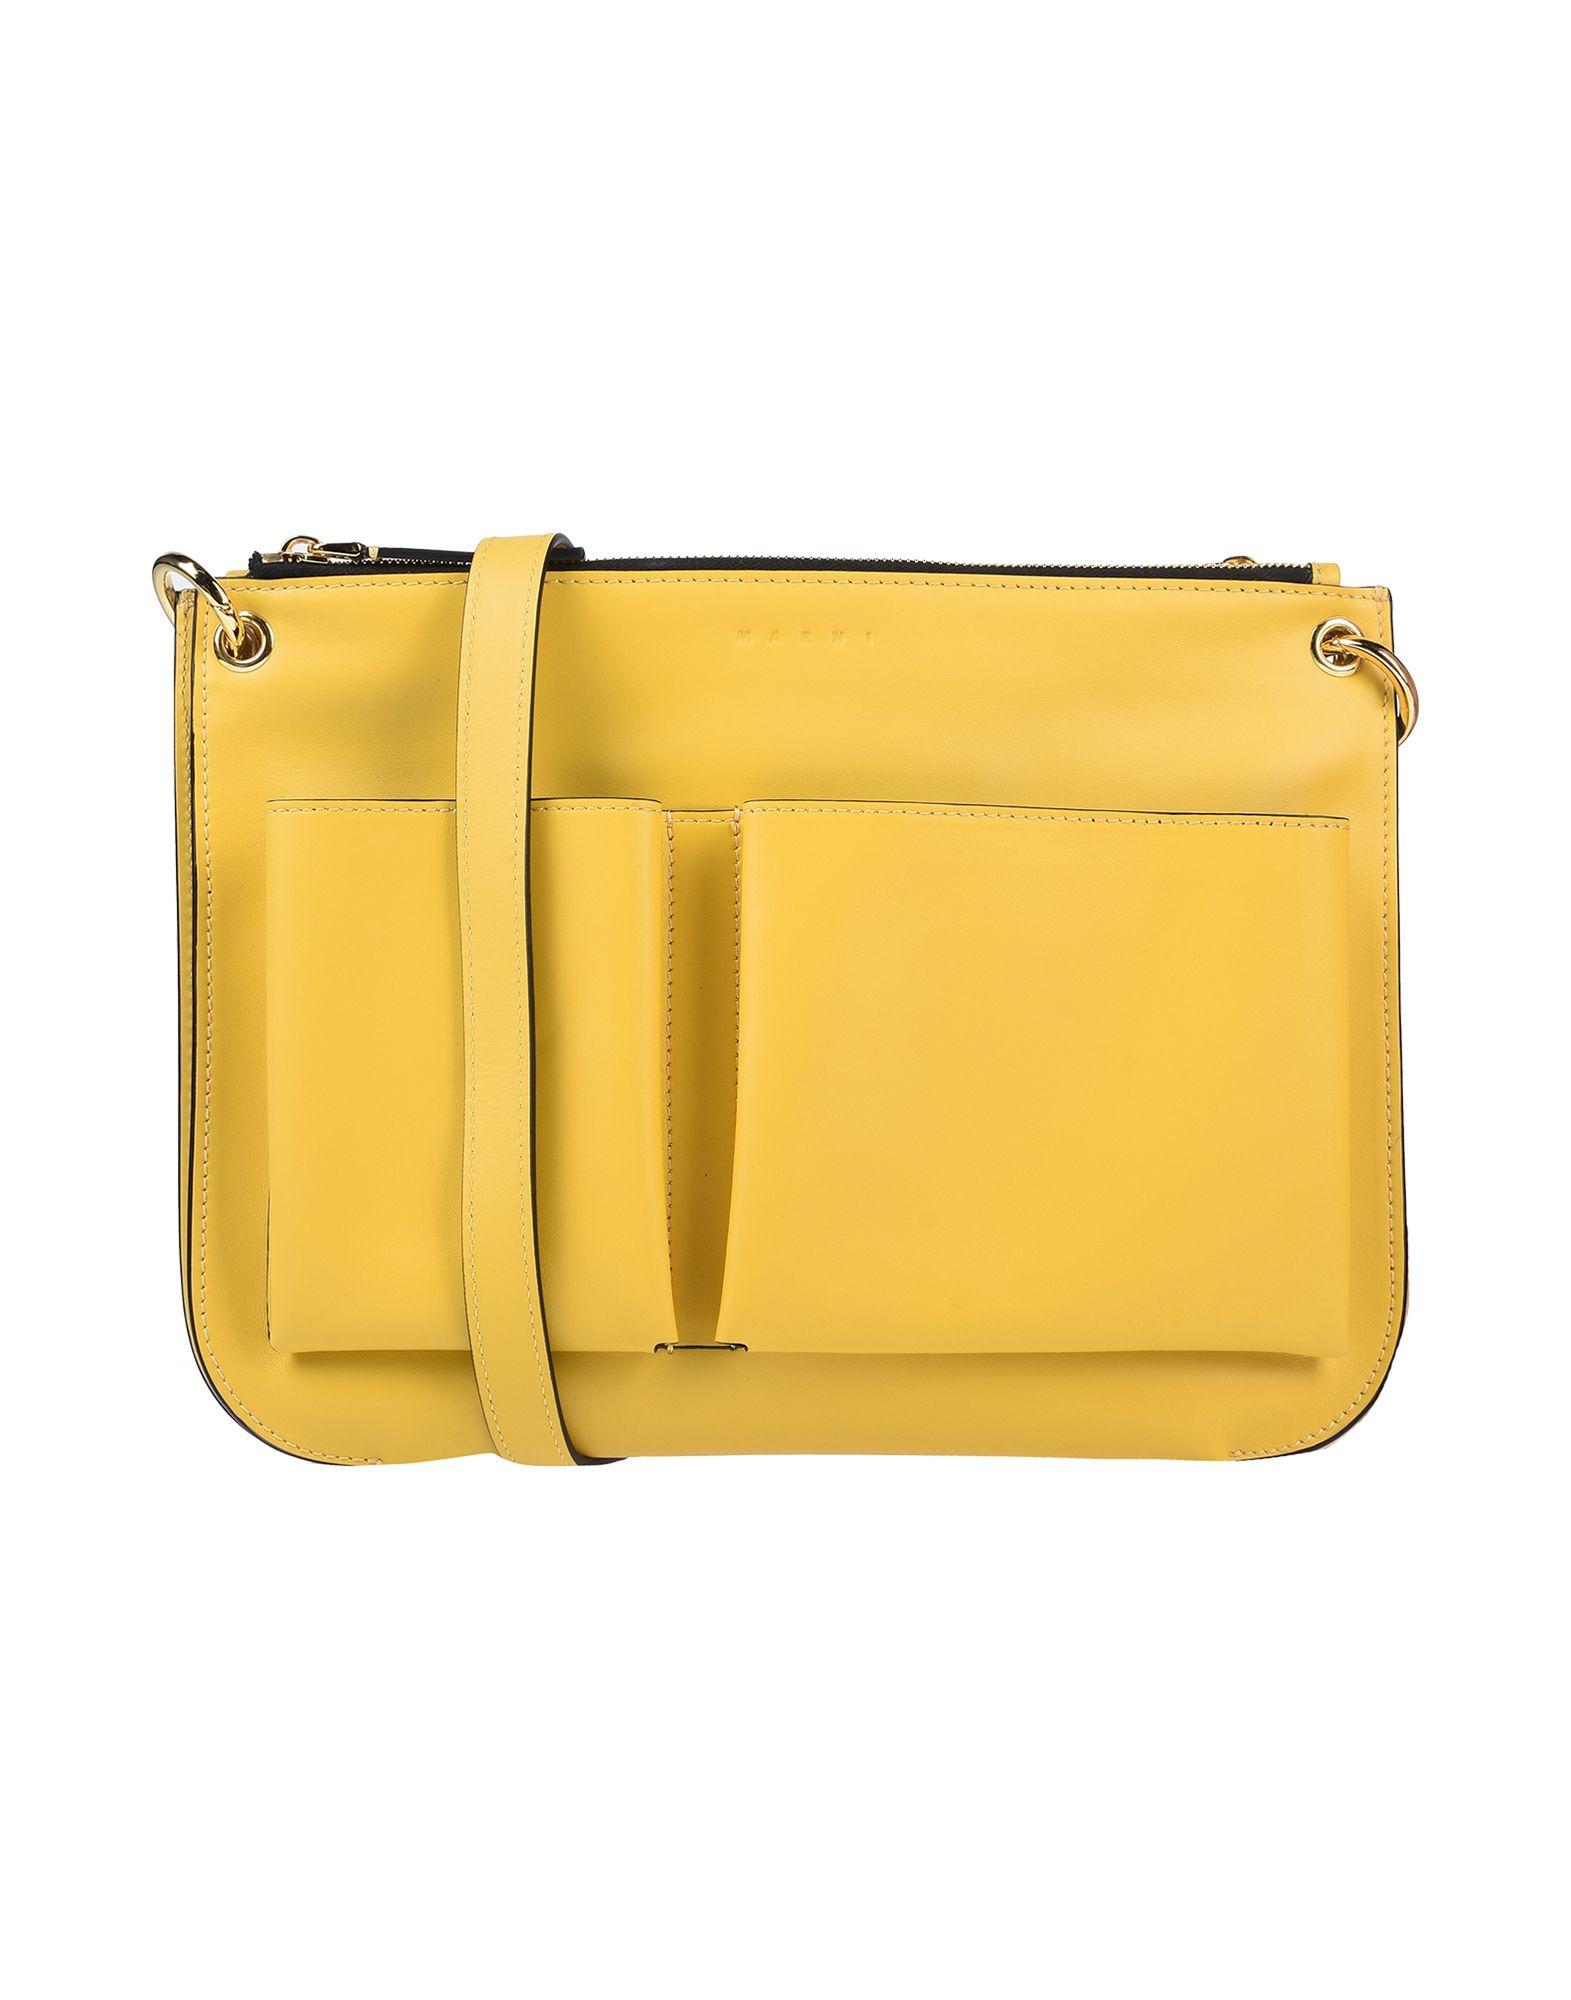 Marni Leather Cross-body Bag in Yellow - Lyst